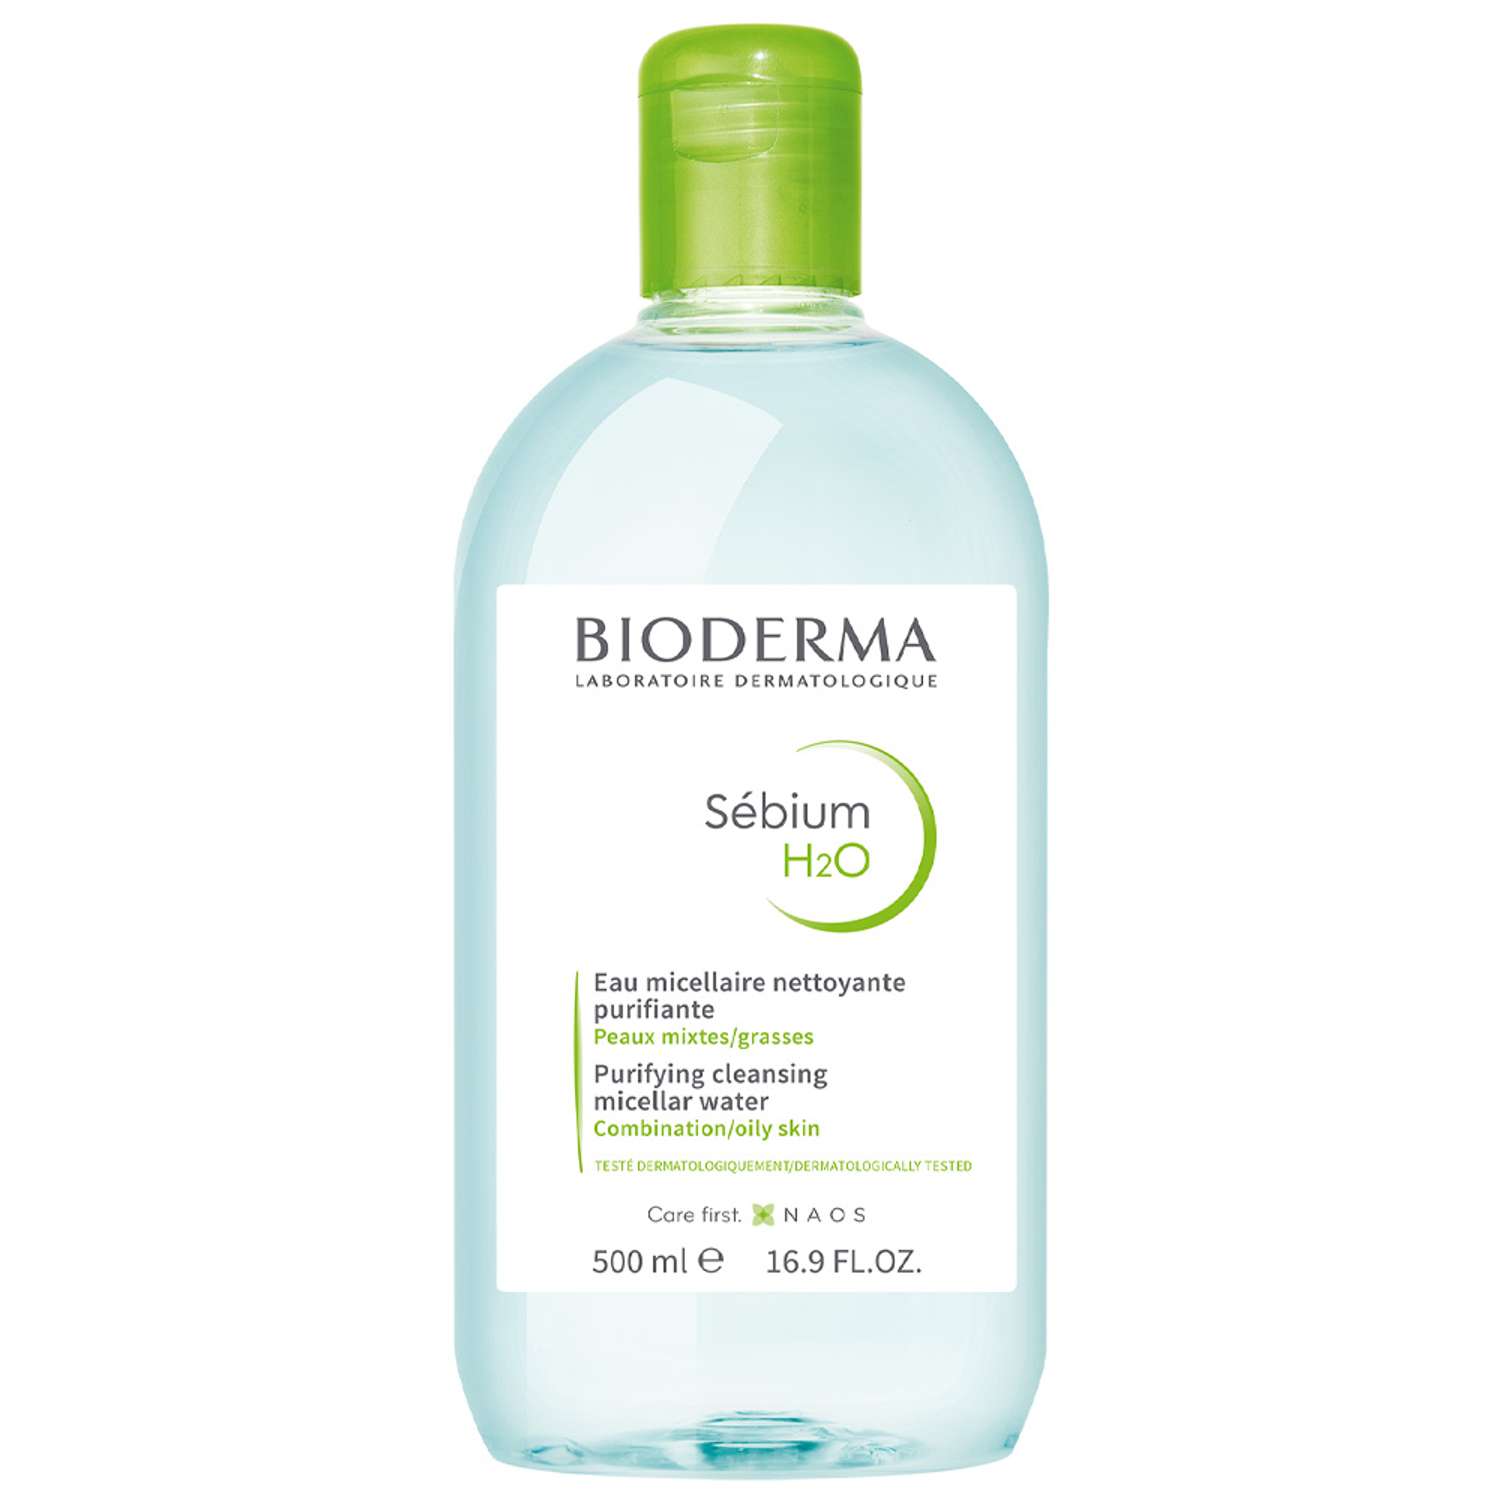 Мицеллярная вода H2O Bioderma Sebium очищающая для жирной и проблемной кожи лица 500 мл - фото 1